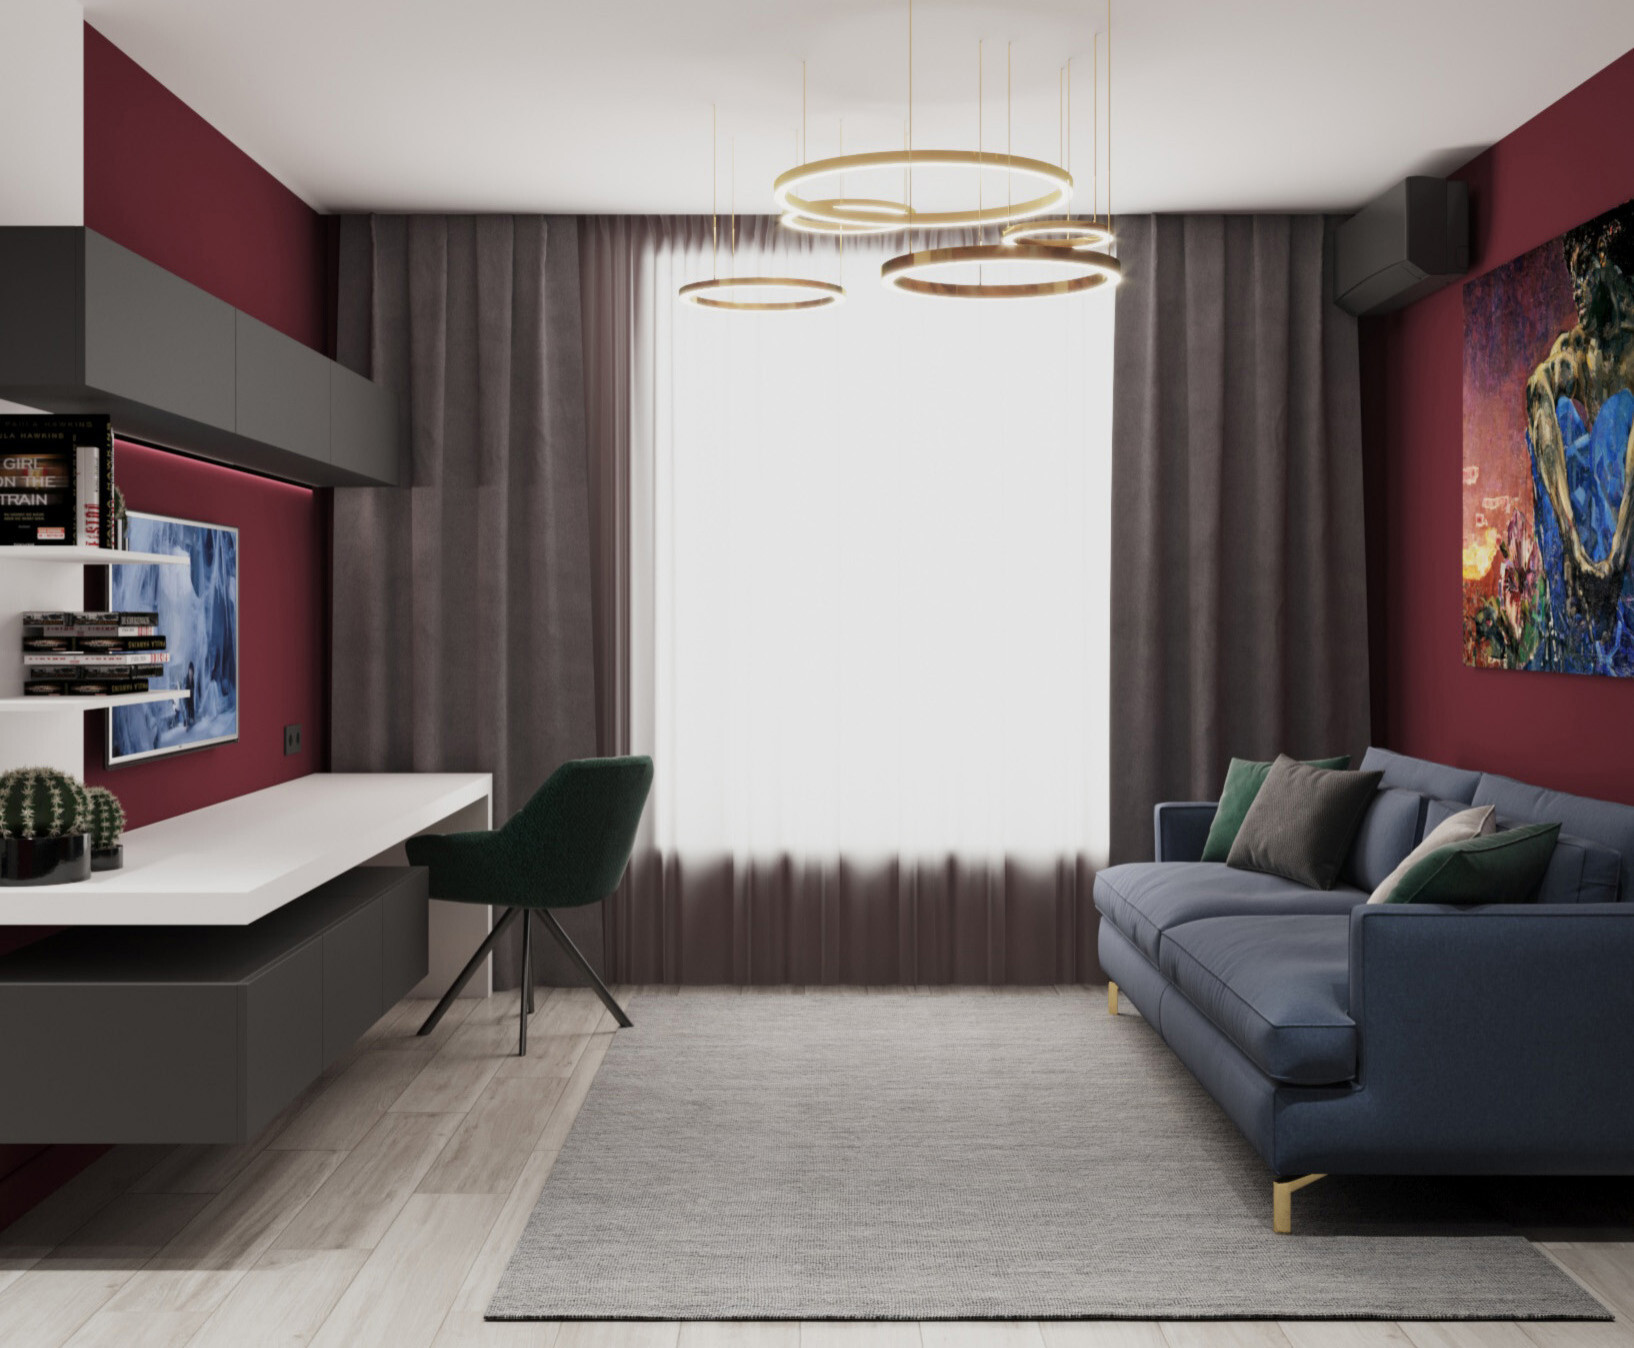 Интерьер гостиной cветовыми линиями и подсветкой настенной в современном стиле